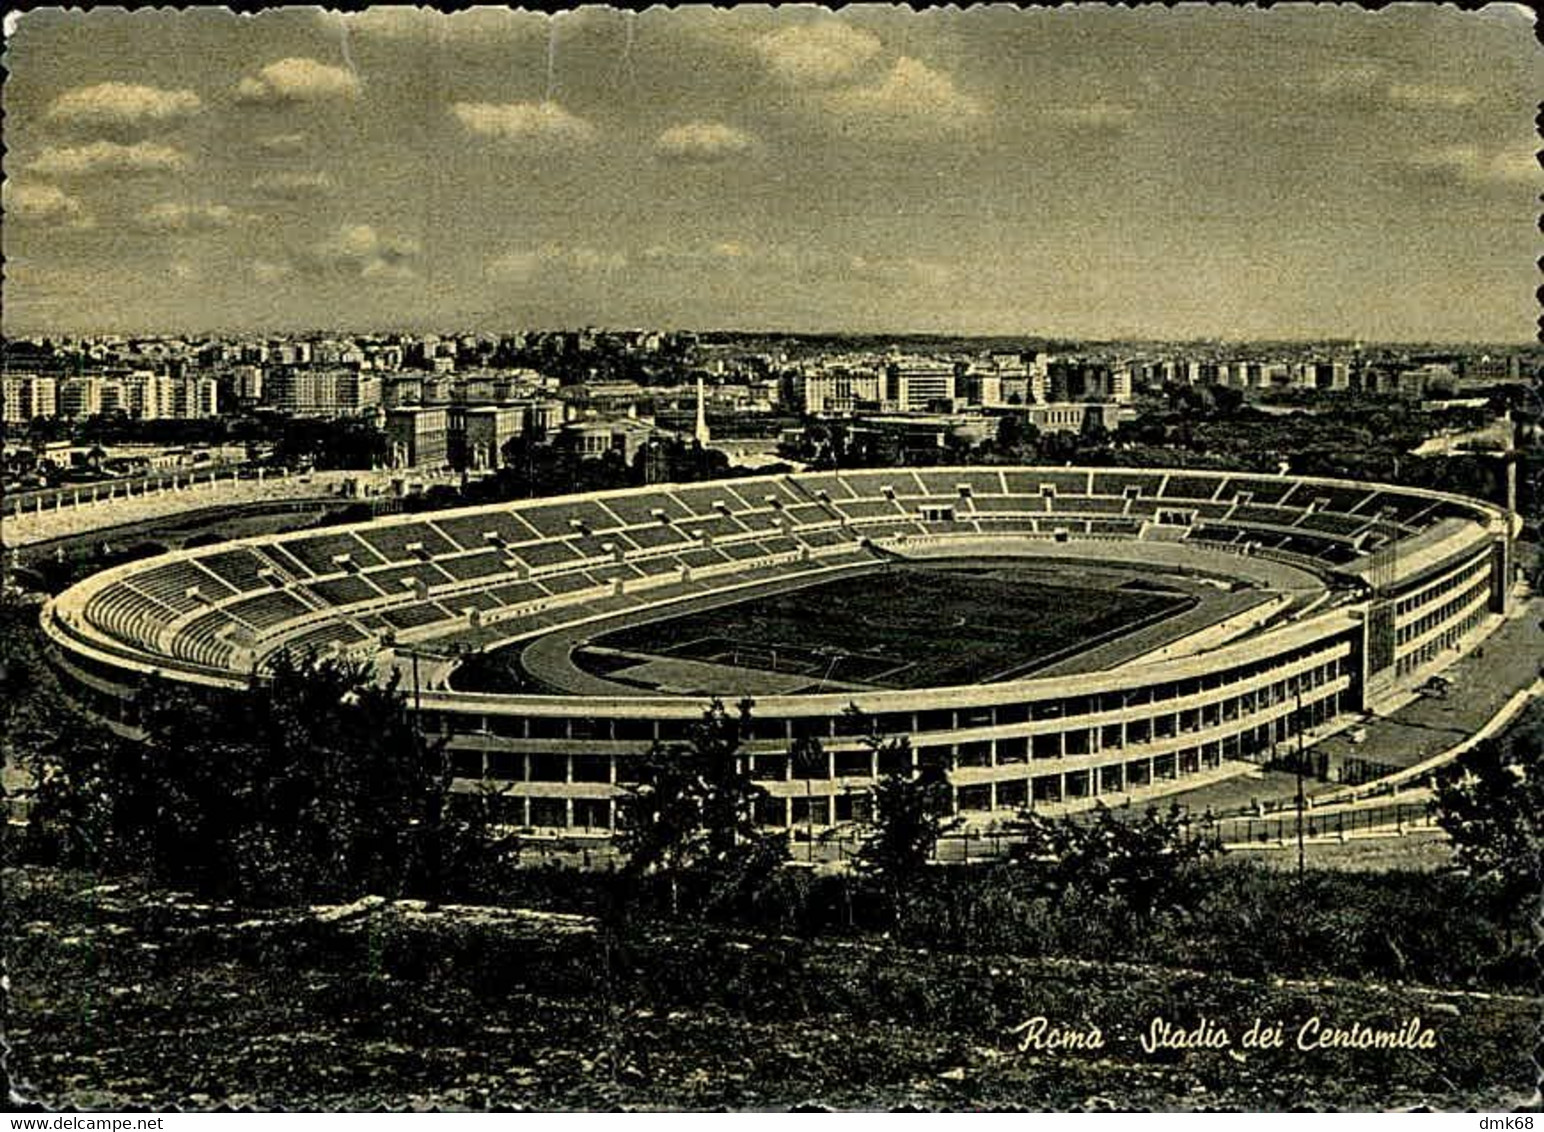 ROMA - STADIUM / STADIO DEI CENTOMILA - EDIZIONE CESARE CAPELLI - 1950s (10522) - Stadiums & Sporting Infrastructures